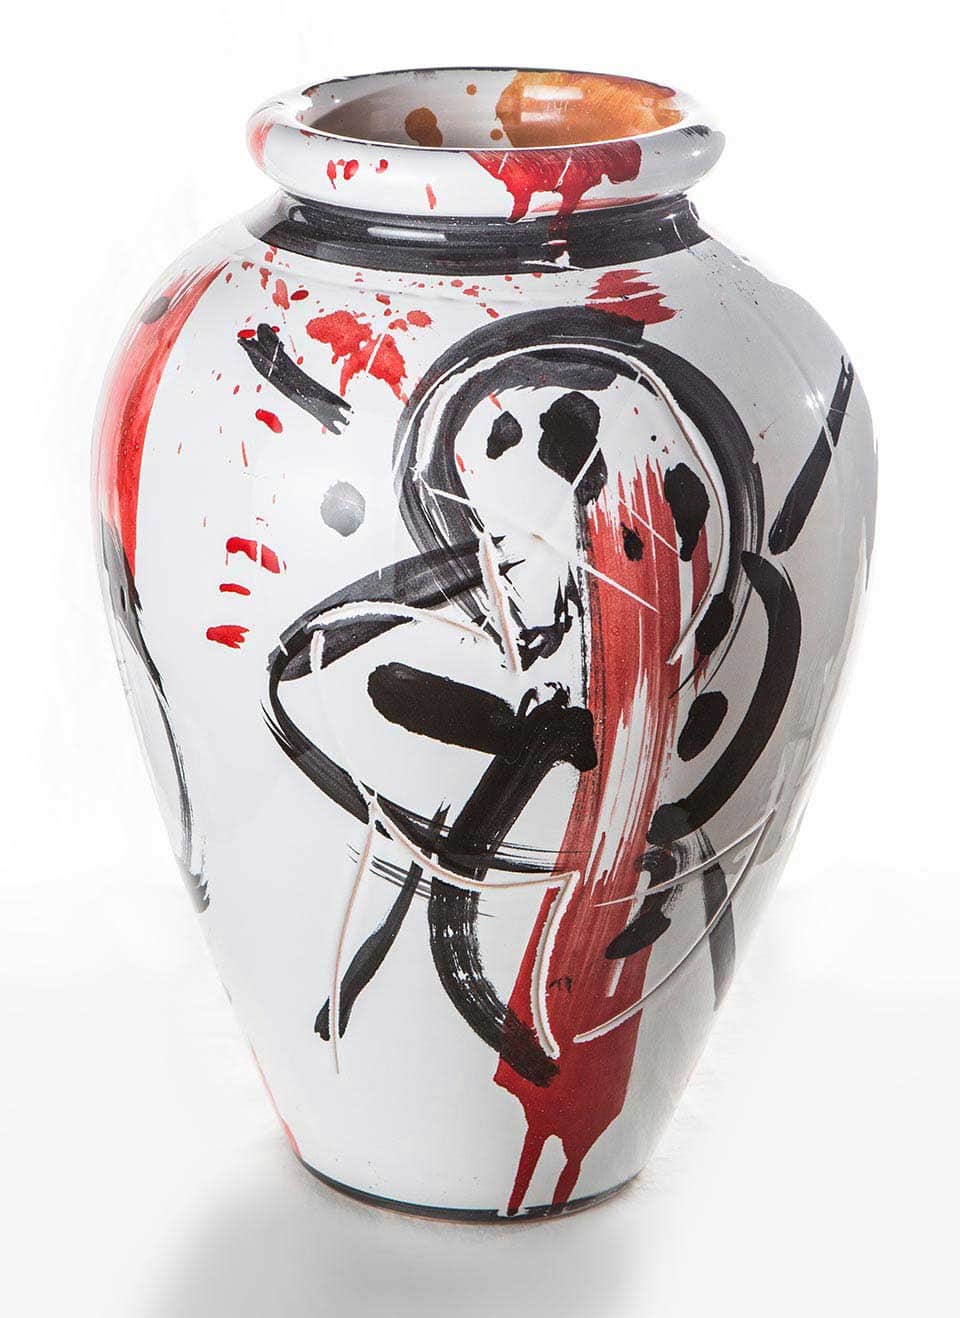 Vaso dipinto e graffito realizzato presso Ceramiche Pierluca. 2015.